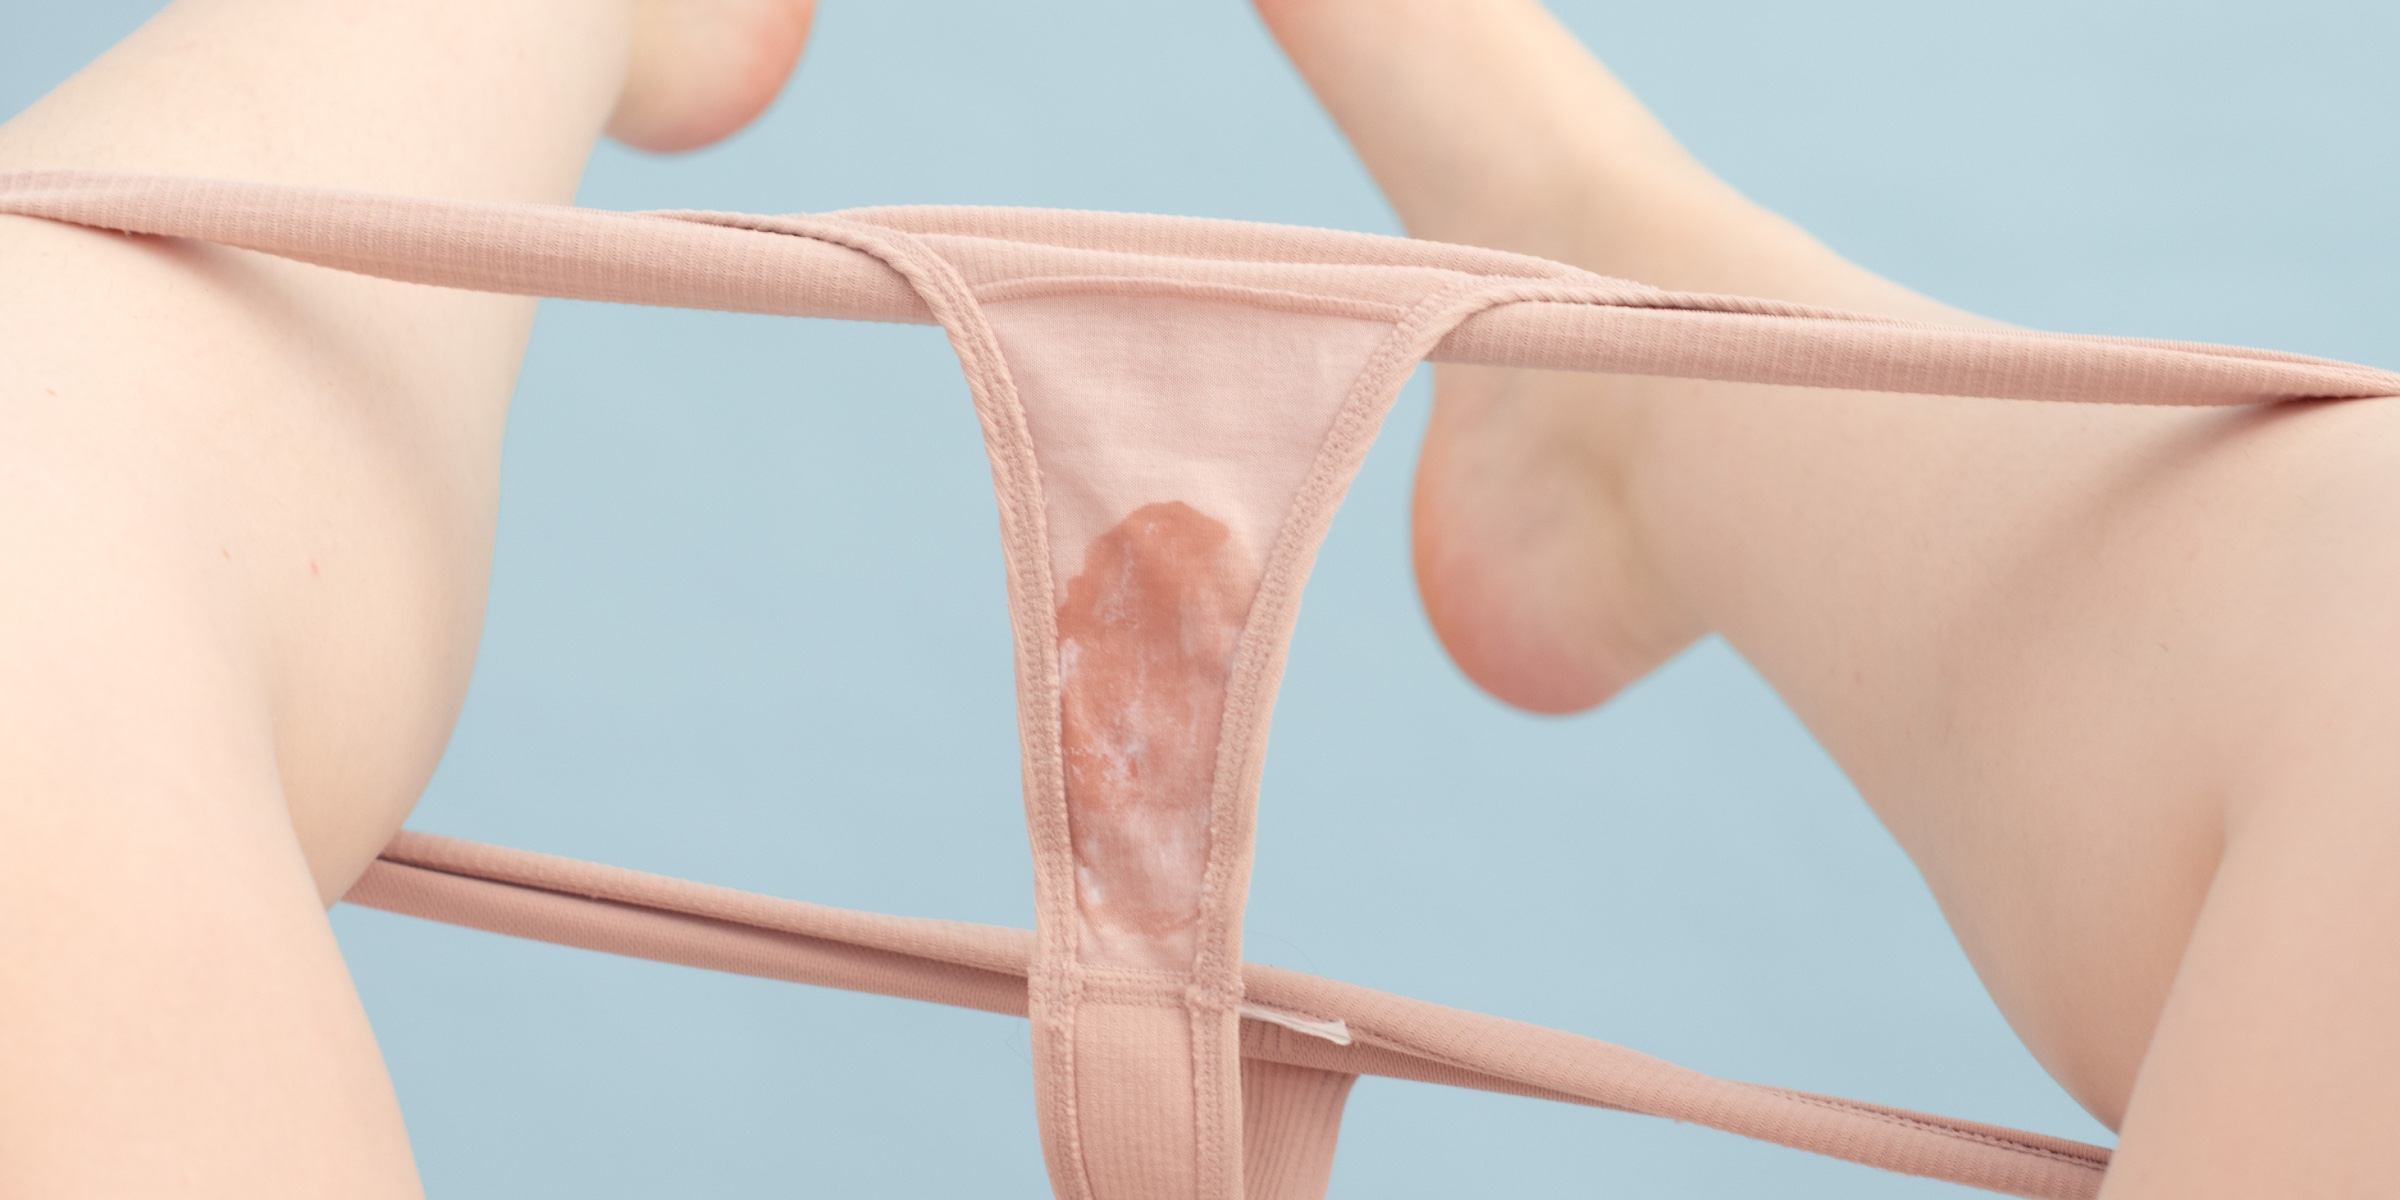 cervical mucus in underwear